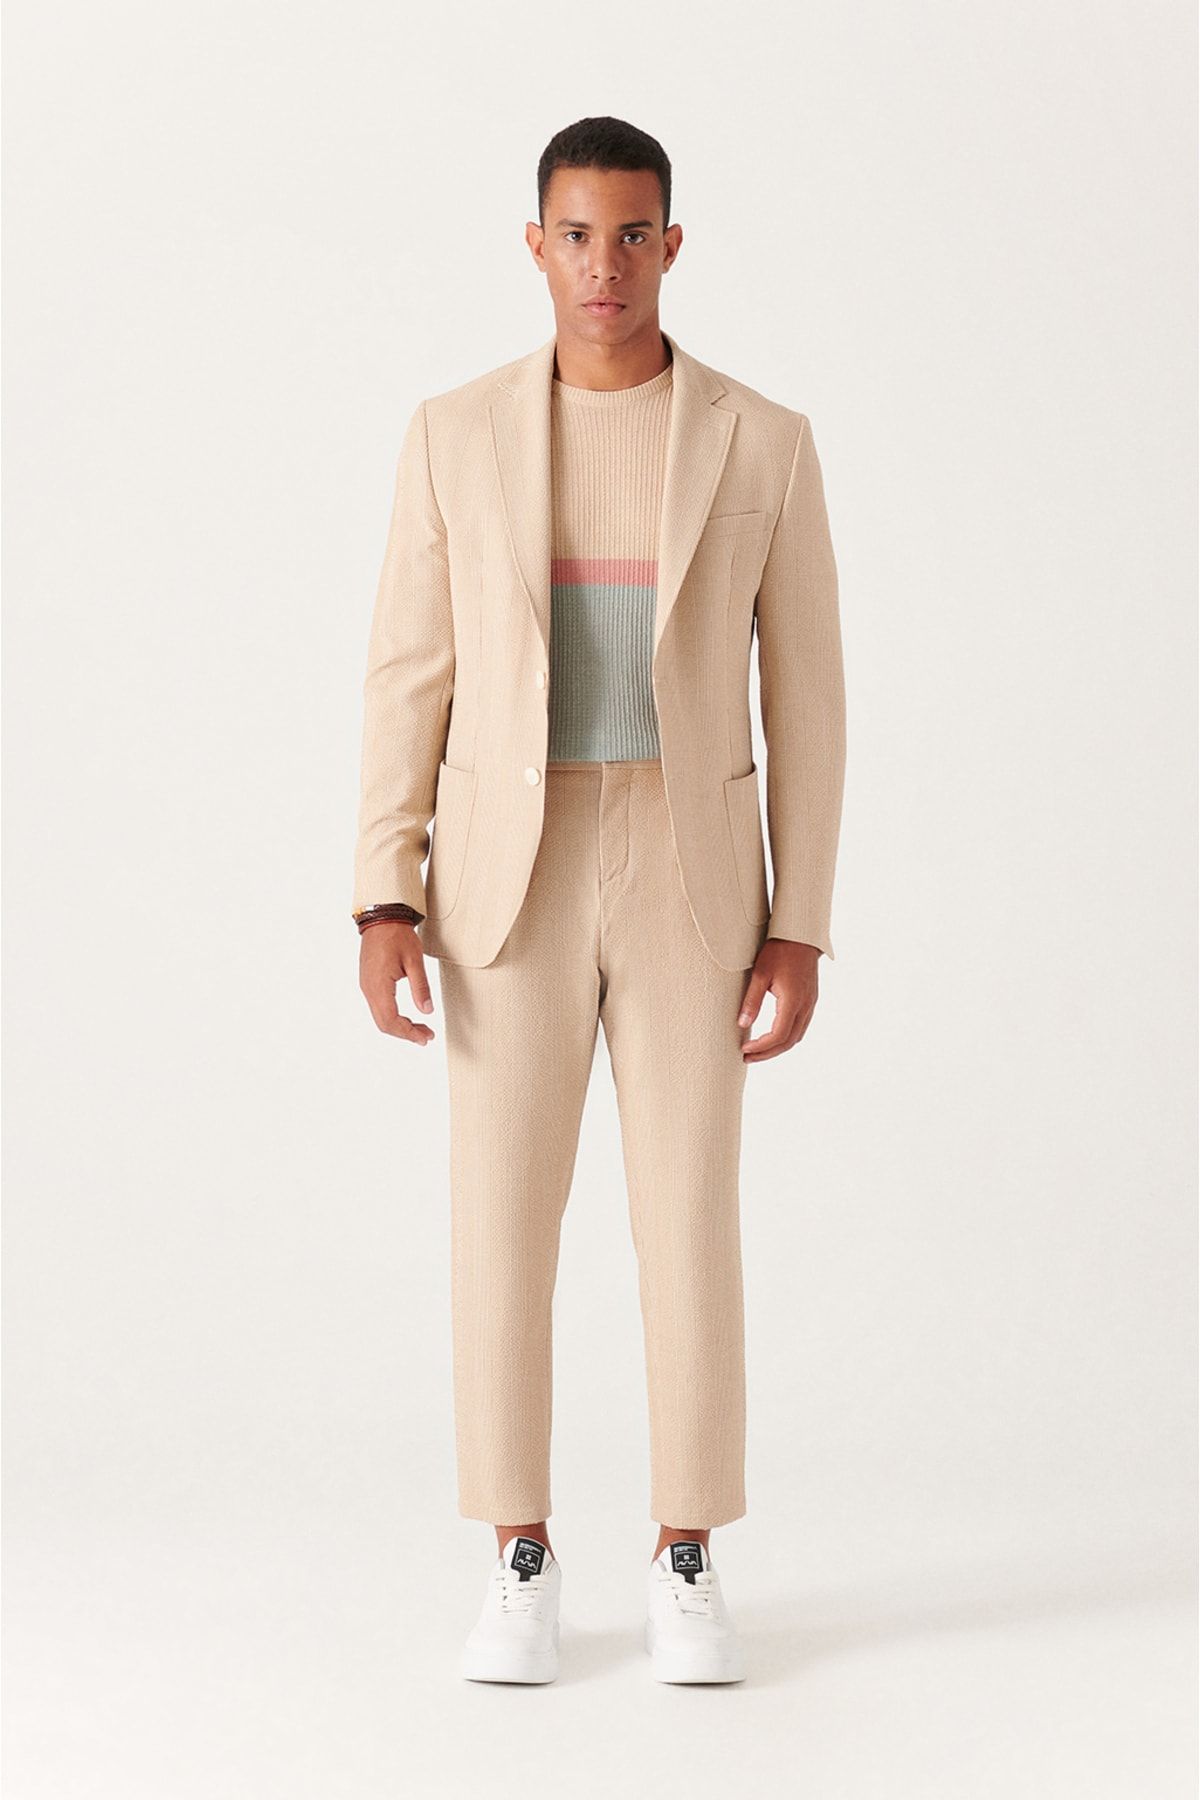 شلوار پارچه ای کرمی جیب دار زیپ دار دکمه ای مدل راسته کلاسیک مردانه آوا Avva (برند ترکیه)